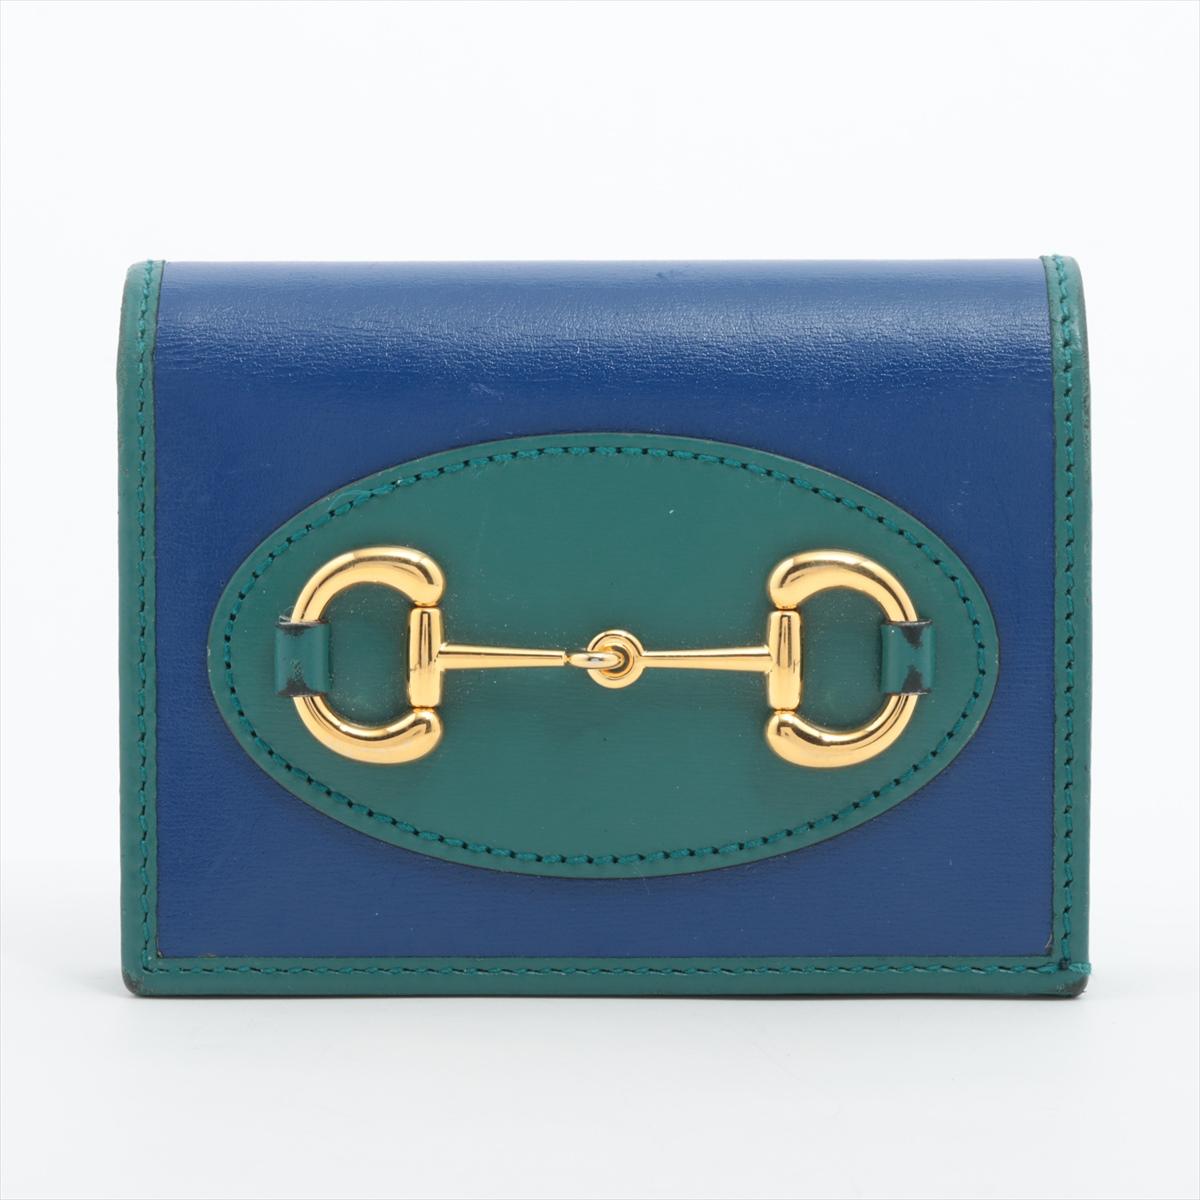 Die Gucci Horse Bits Leather Compact Wallet in Blau und Grün ist ein stilvolles und kompaktes Accessoire, das mühelos Luxus mit leuchtenden Farben verbindet. Das aus hochwertigem Leder gefertigte Portemonnaie ist mit dem kultigen Pferdebiss-Motiv